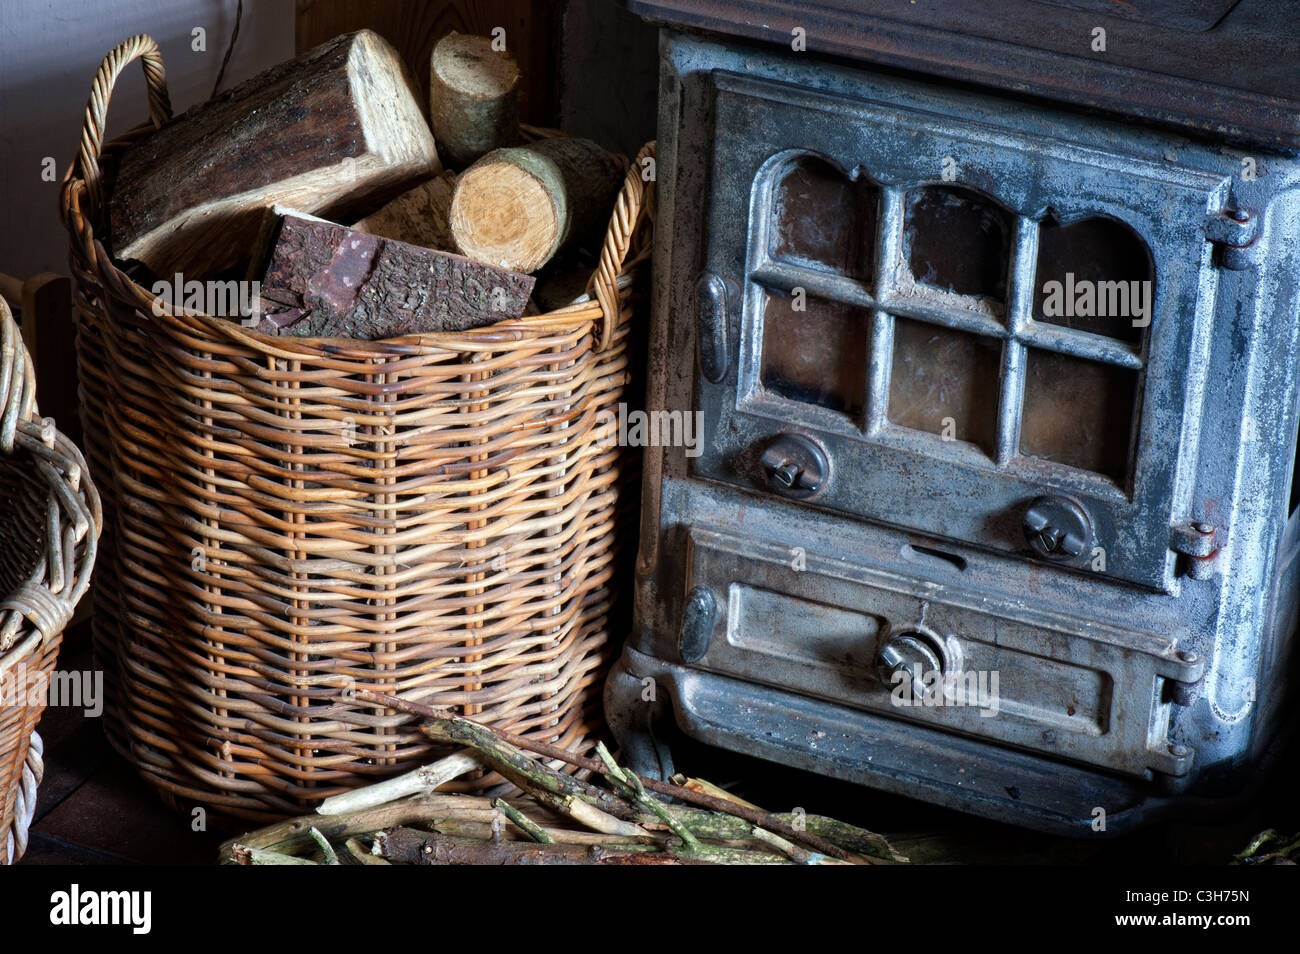 Kaminofen und einen Korb von Protokollen in einem Landhaus. Großbritannien Stockfoto